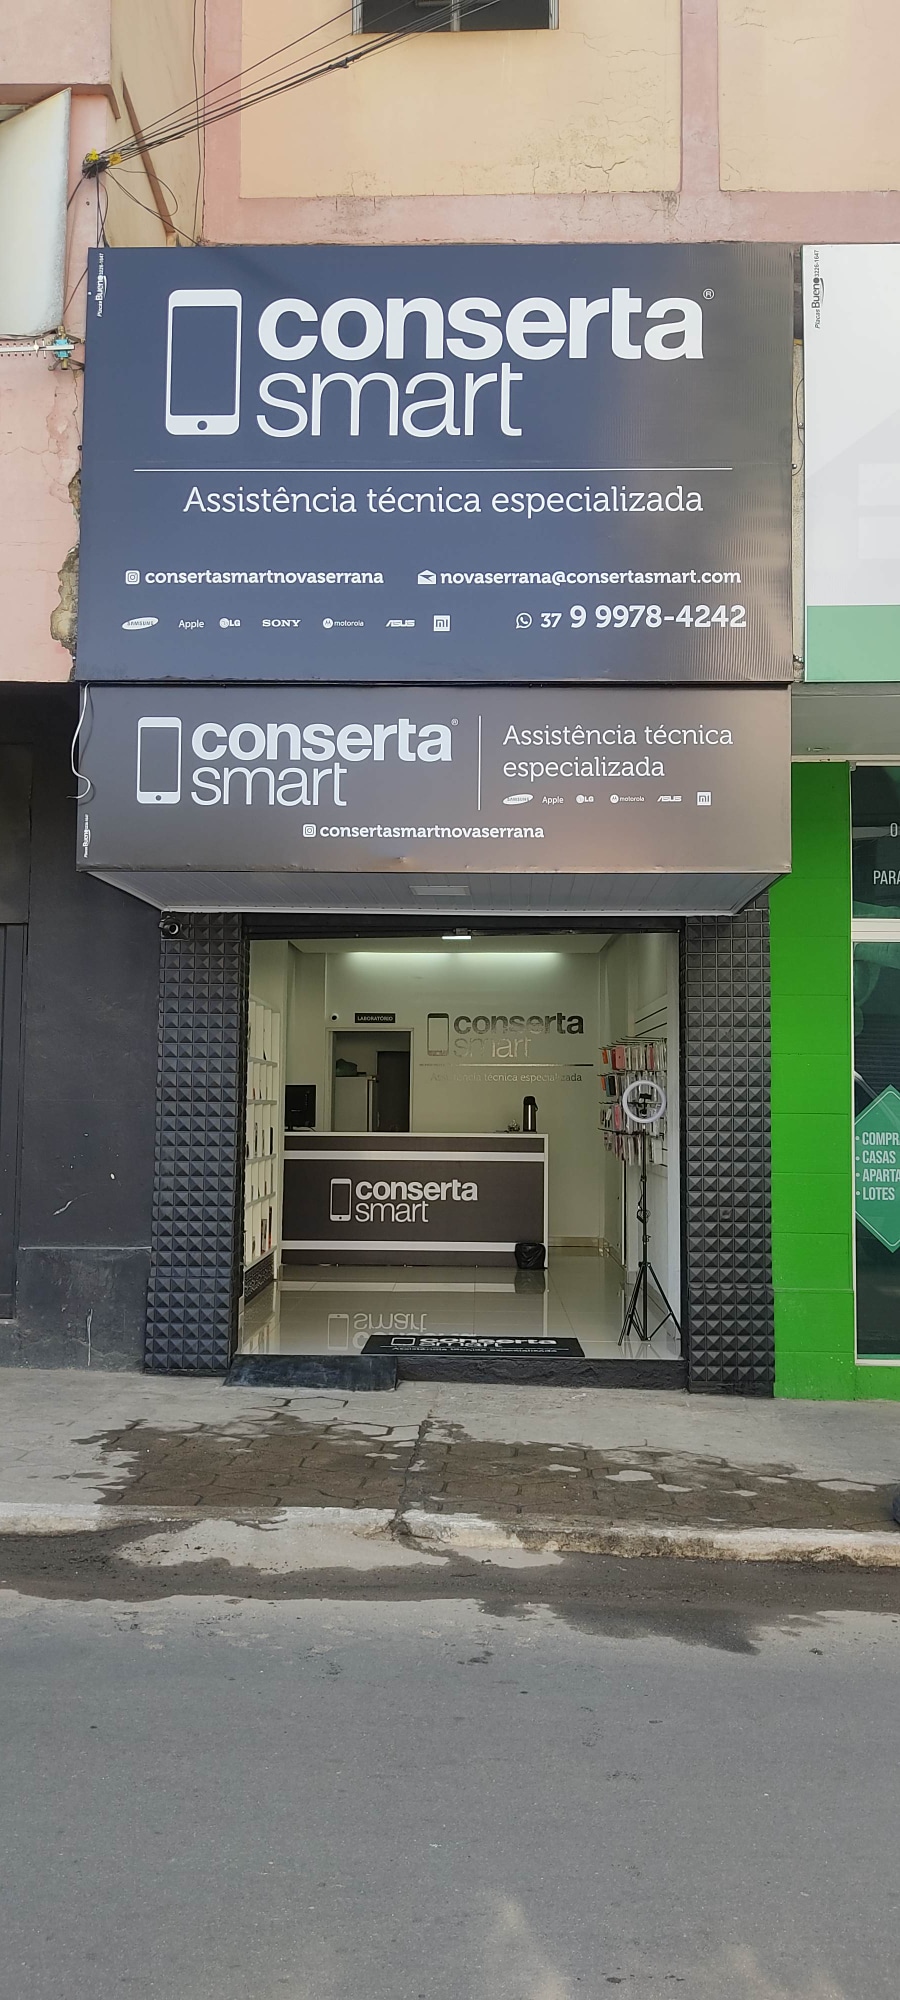 Conserto de Celular em BELO HORIZONTE BARREIRO - R$ 99,00